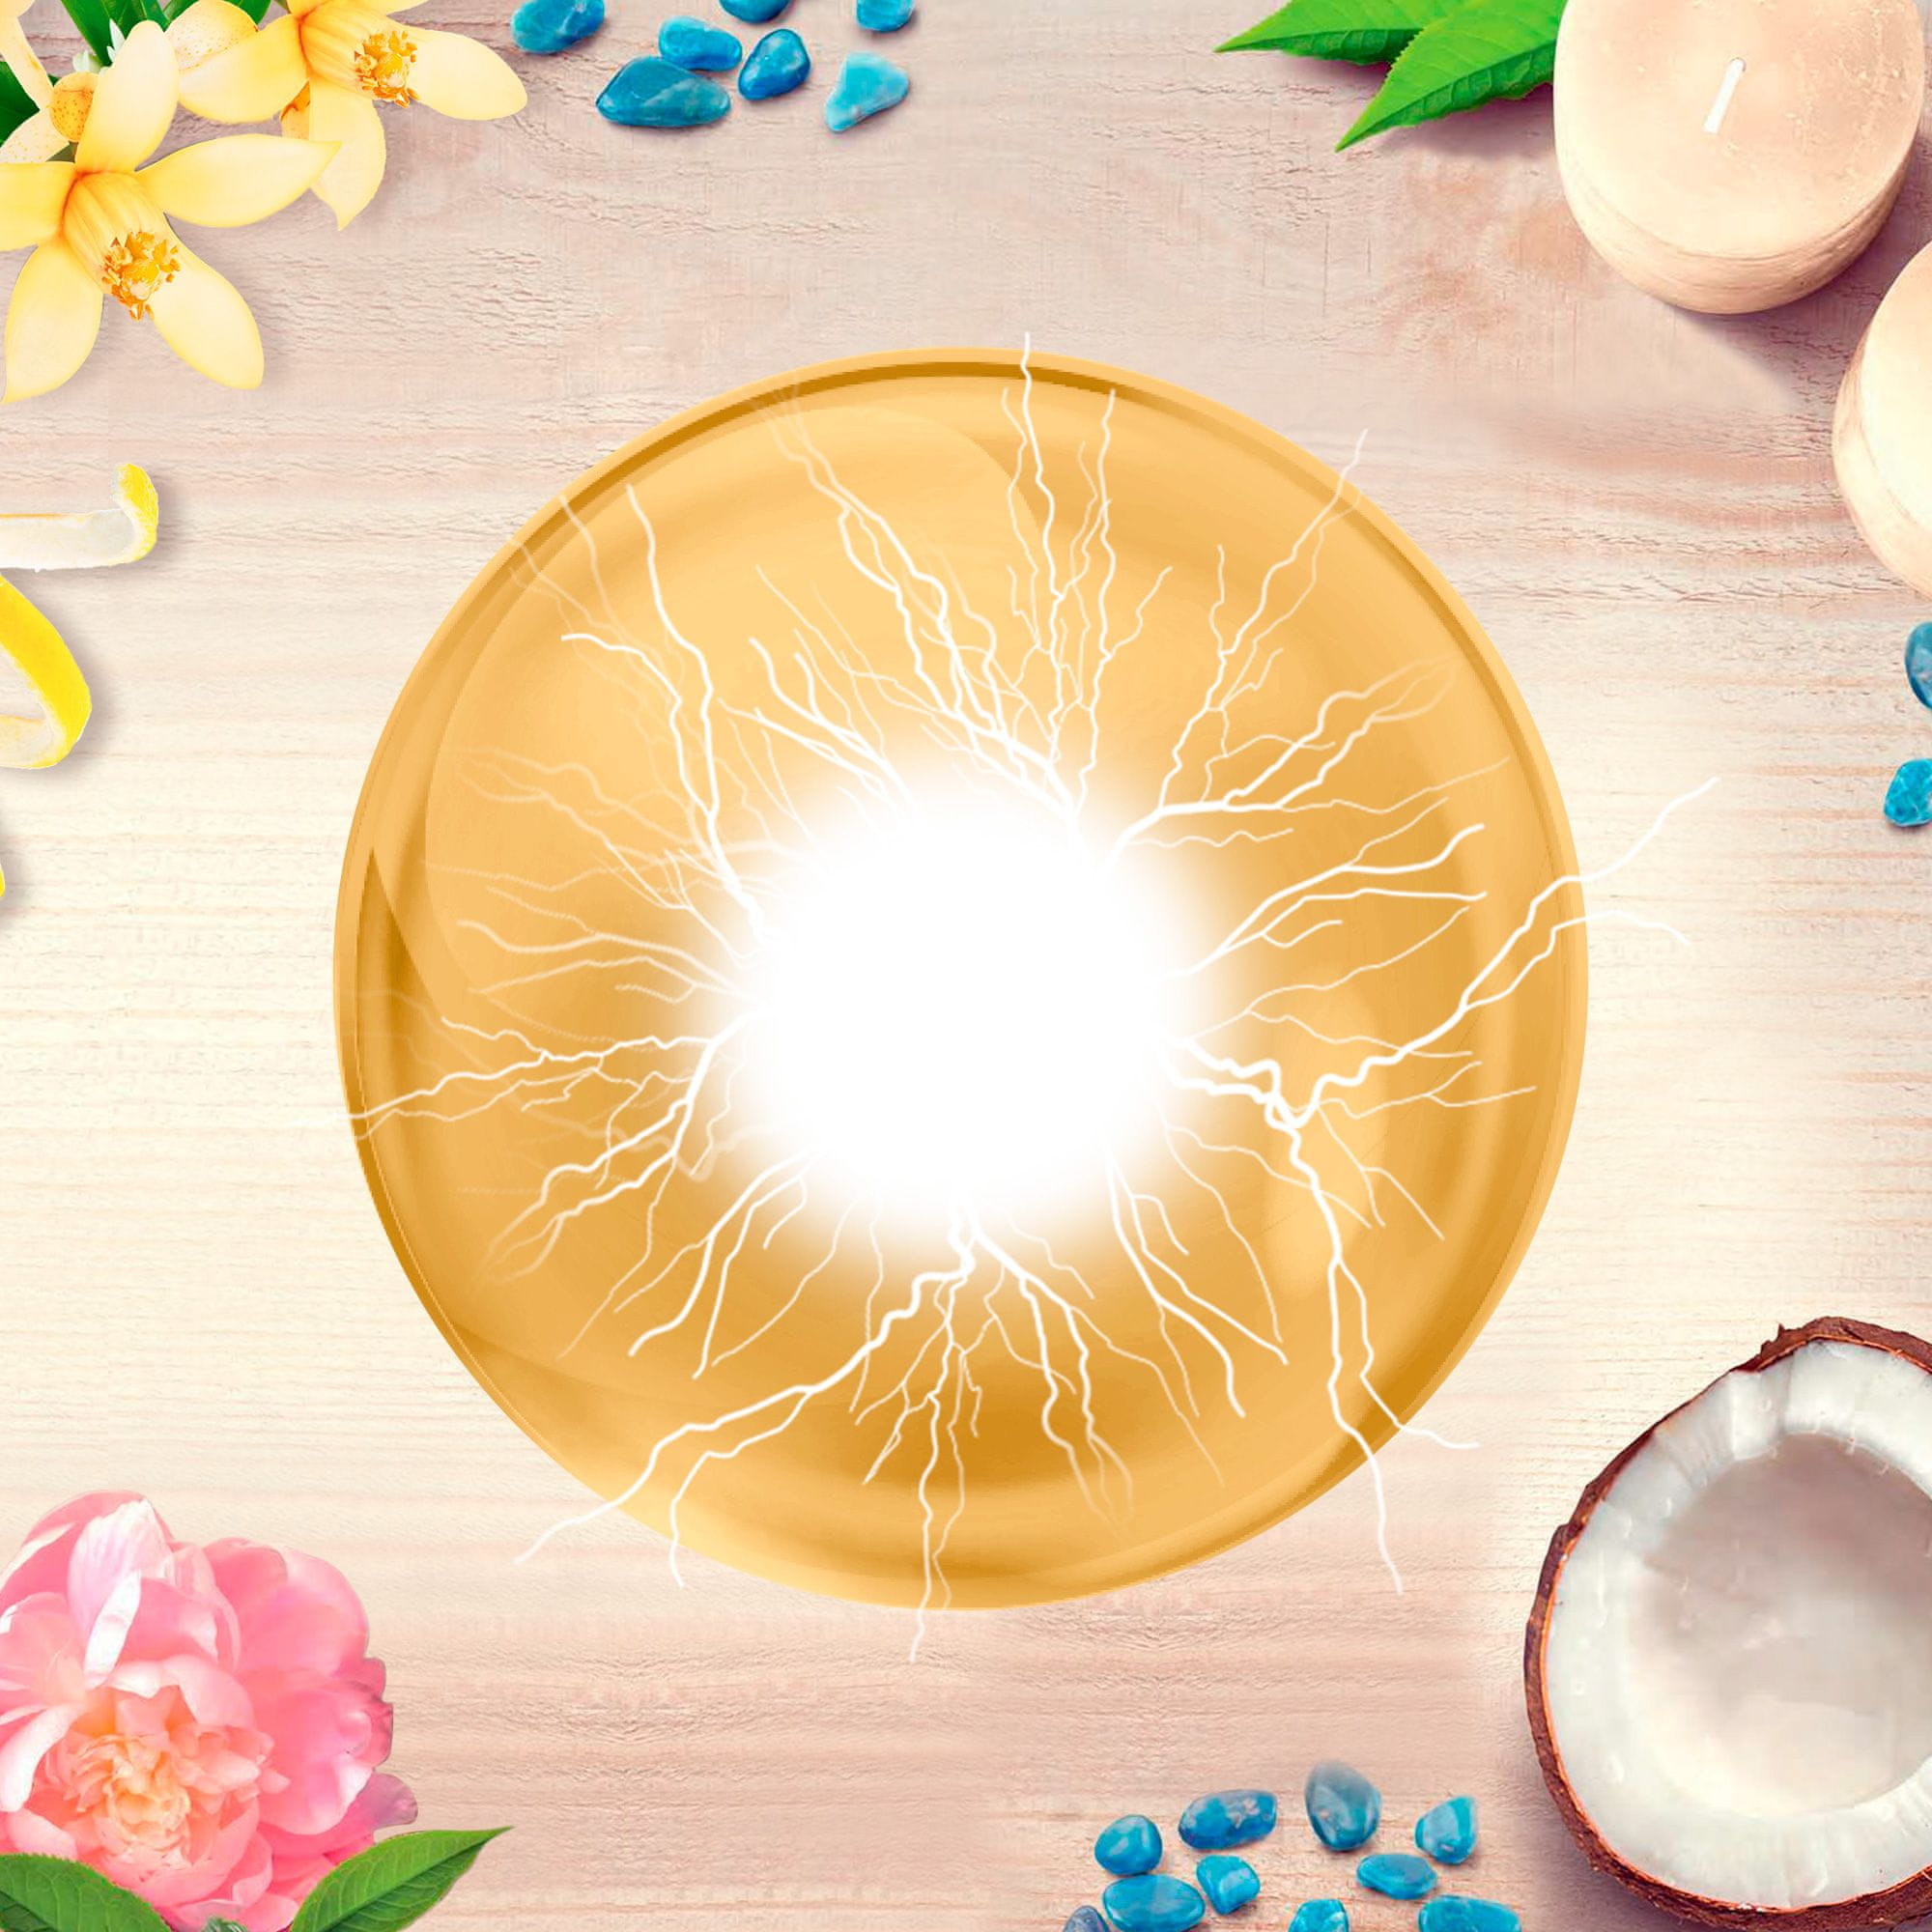  Silan Lemon Blossom Scent&Minerals öblítő1450ml 